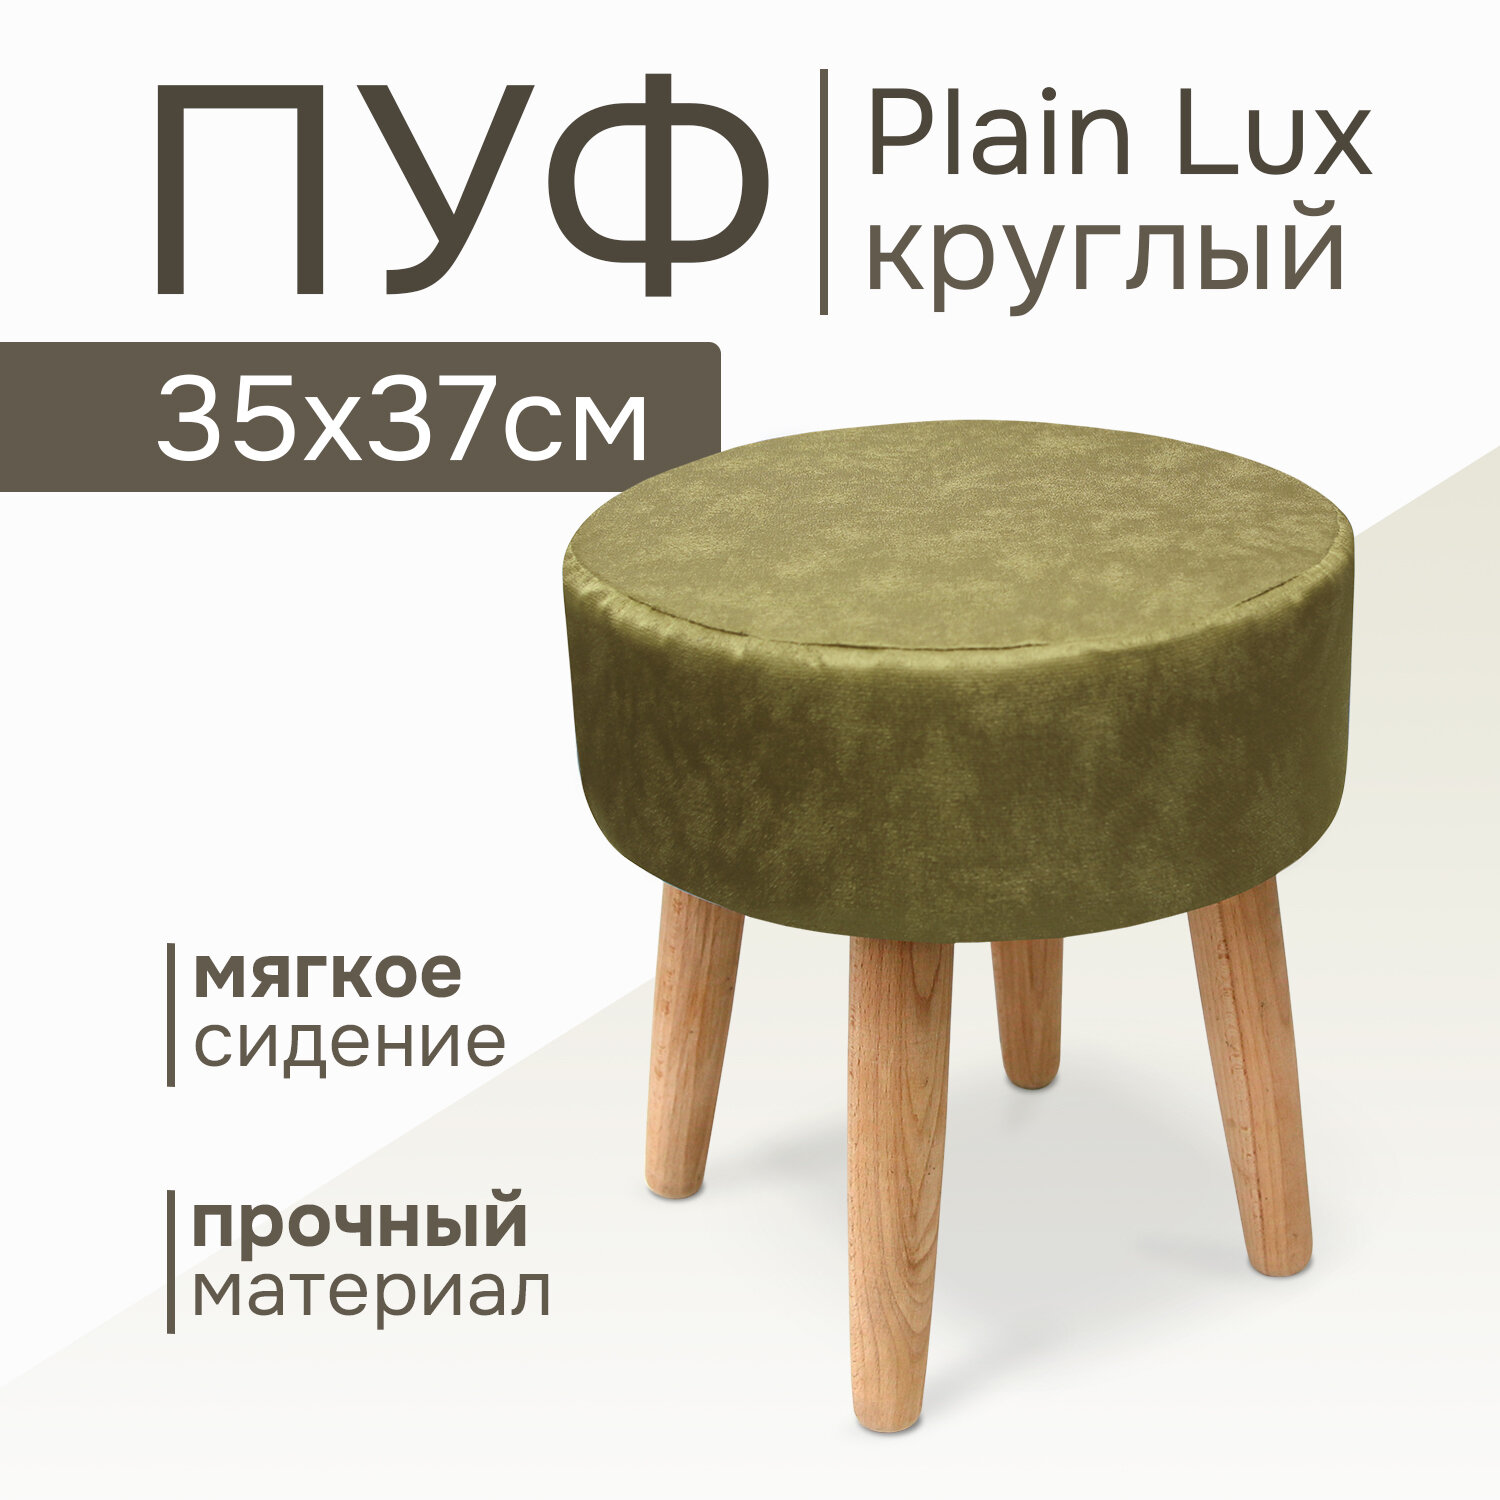 Пуф Plain Lux круглый, цвет тростниковый